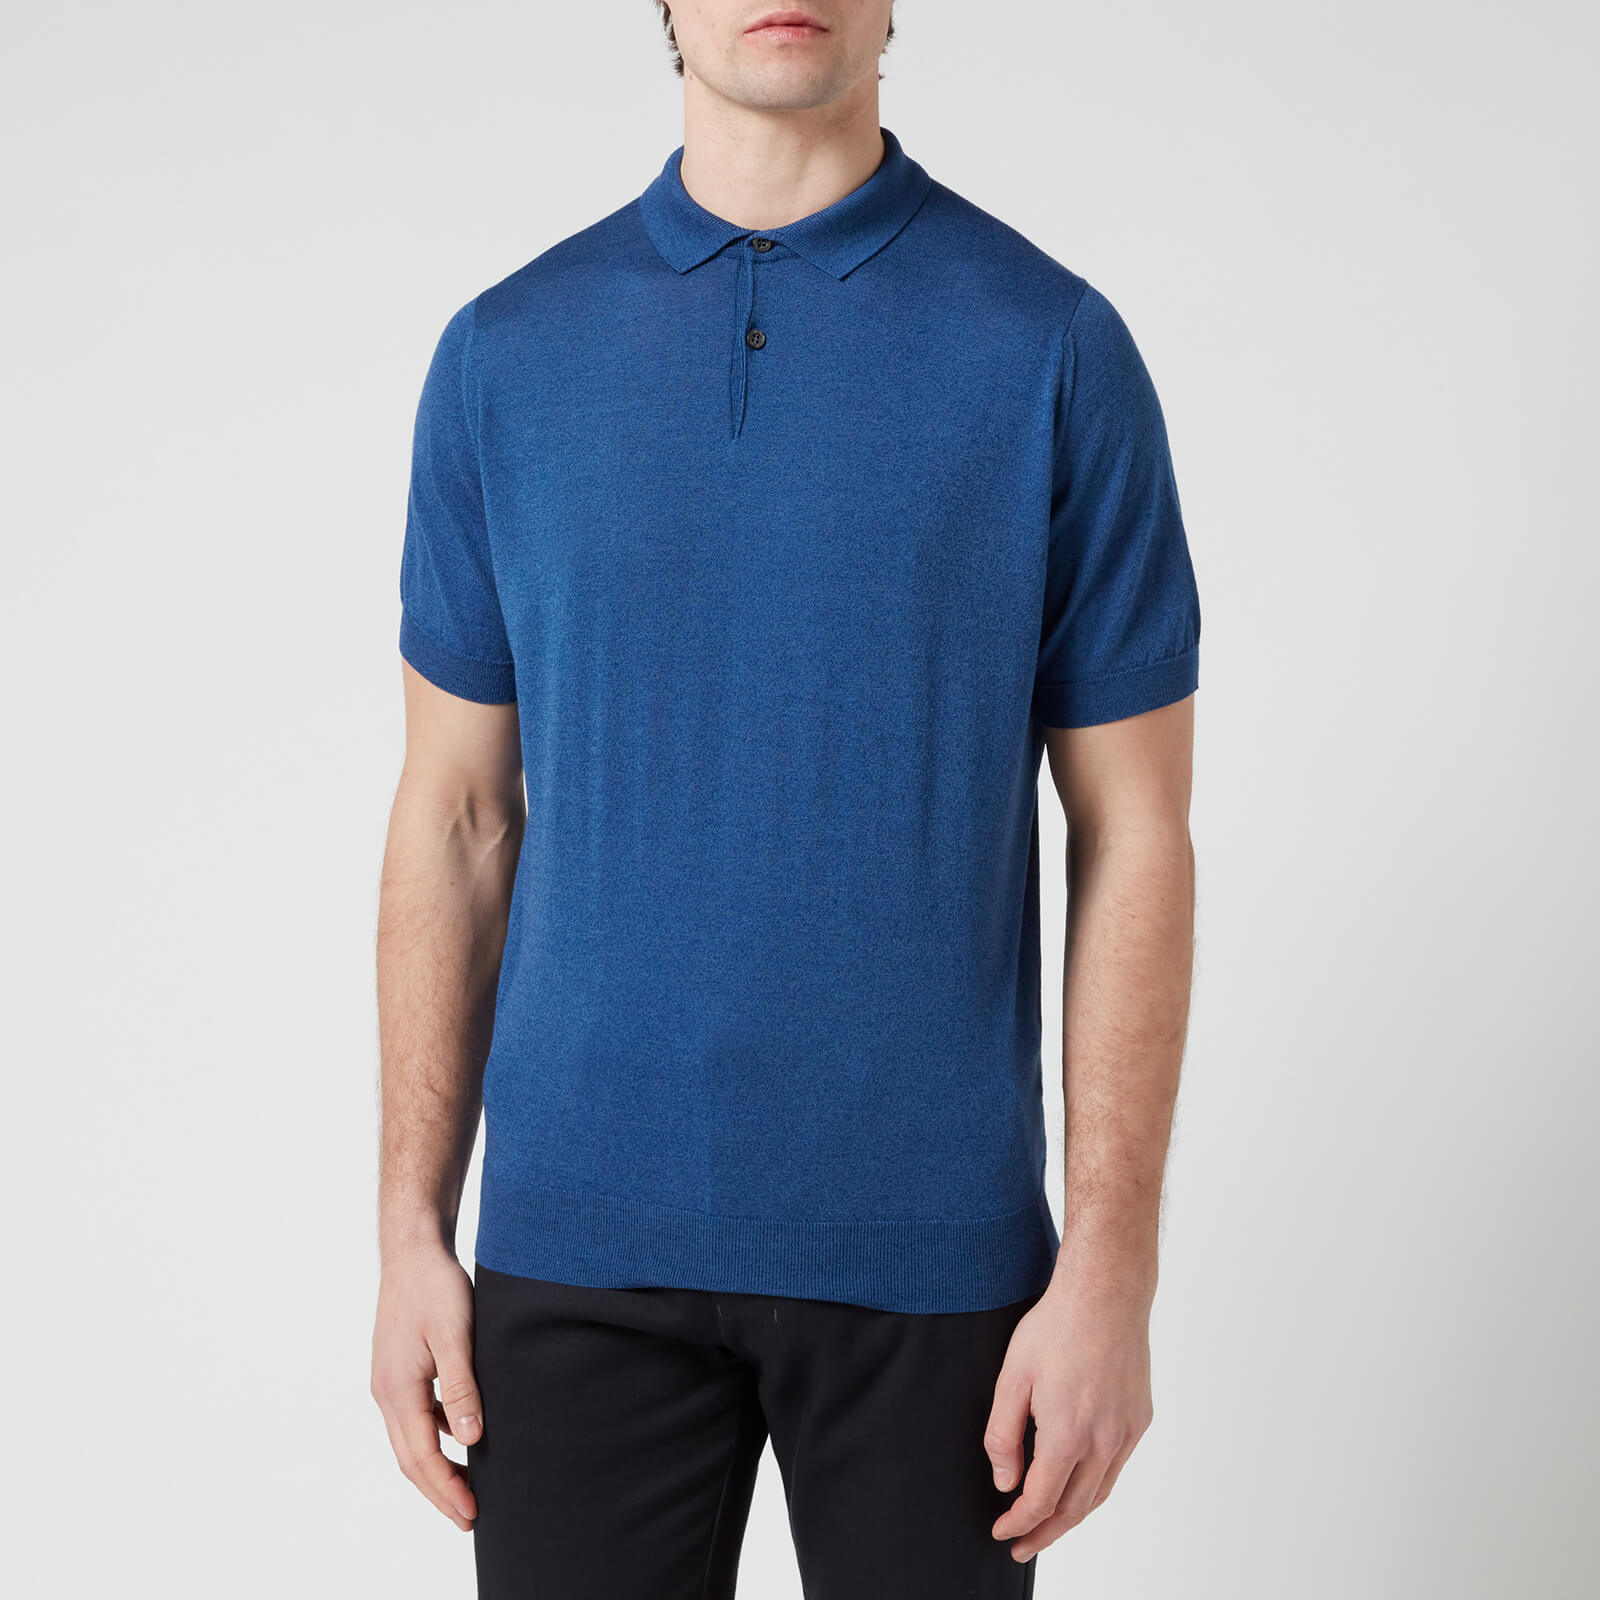 John Smedley Men's Cpayton Polo Shirt - River Blue - S